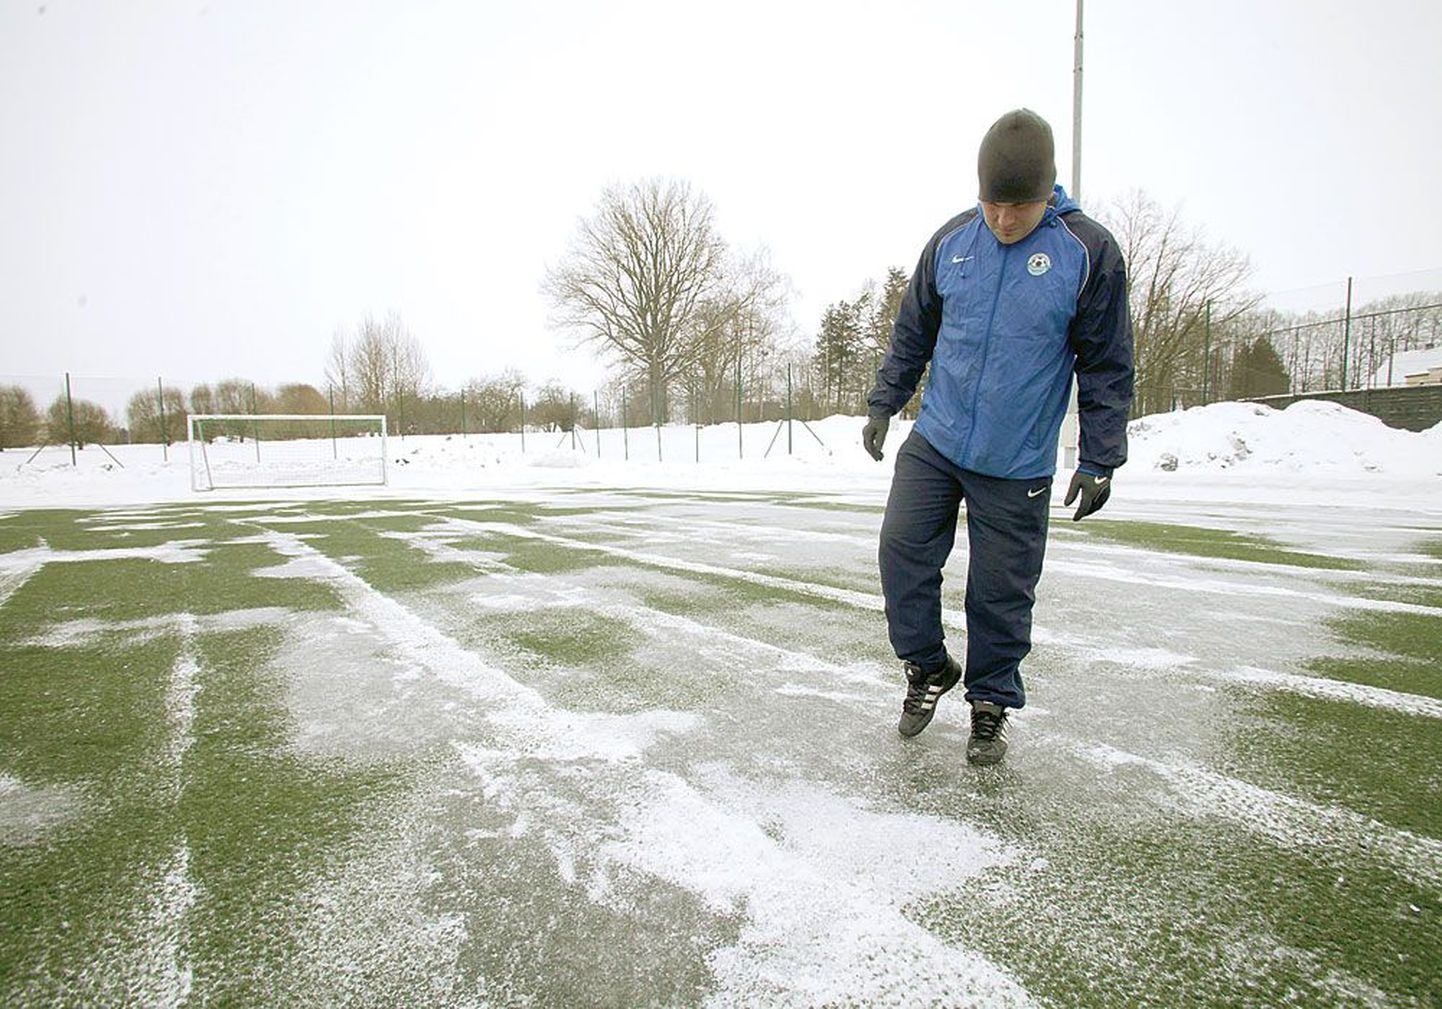 Tренер дублирующего состава и молодежной команды тартуского клуба Tammeka Индрек Козер показывает лед, который образовался на искусст­венном травяном покрытии. С учетом нашего климата в марте эта площадка может выглядеть точно так же.